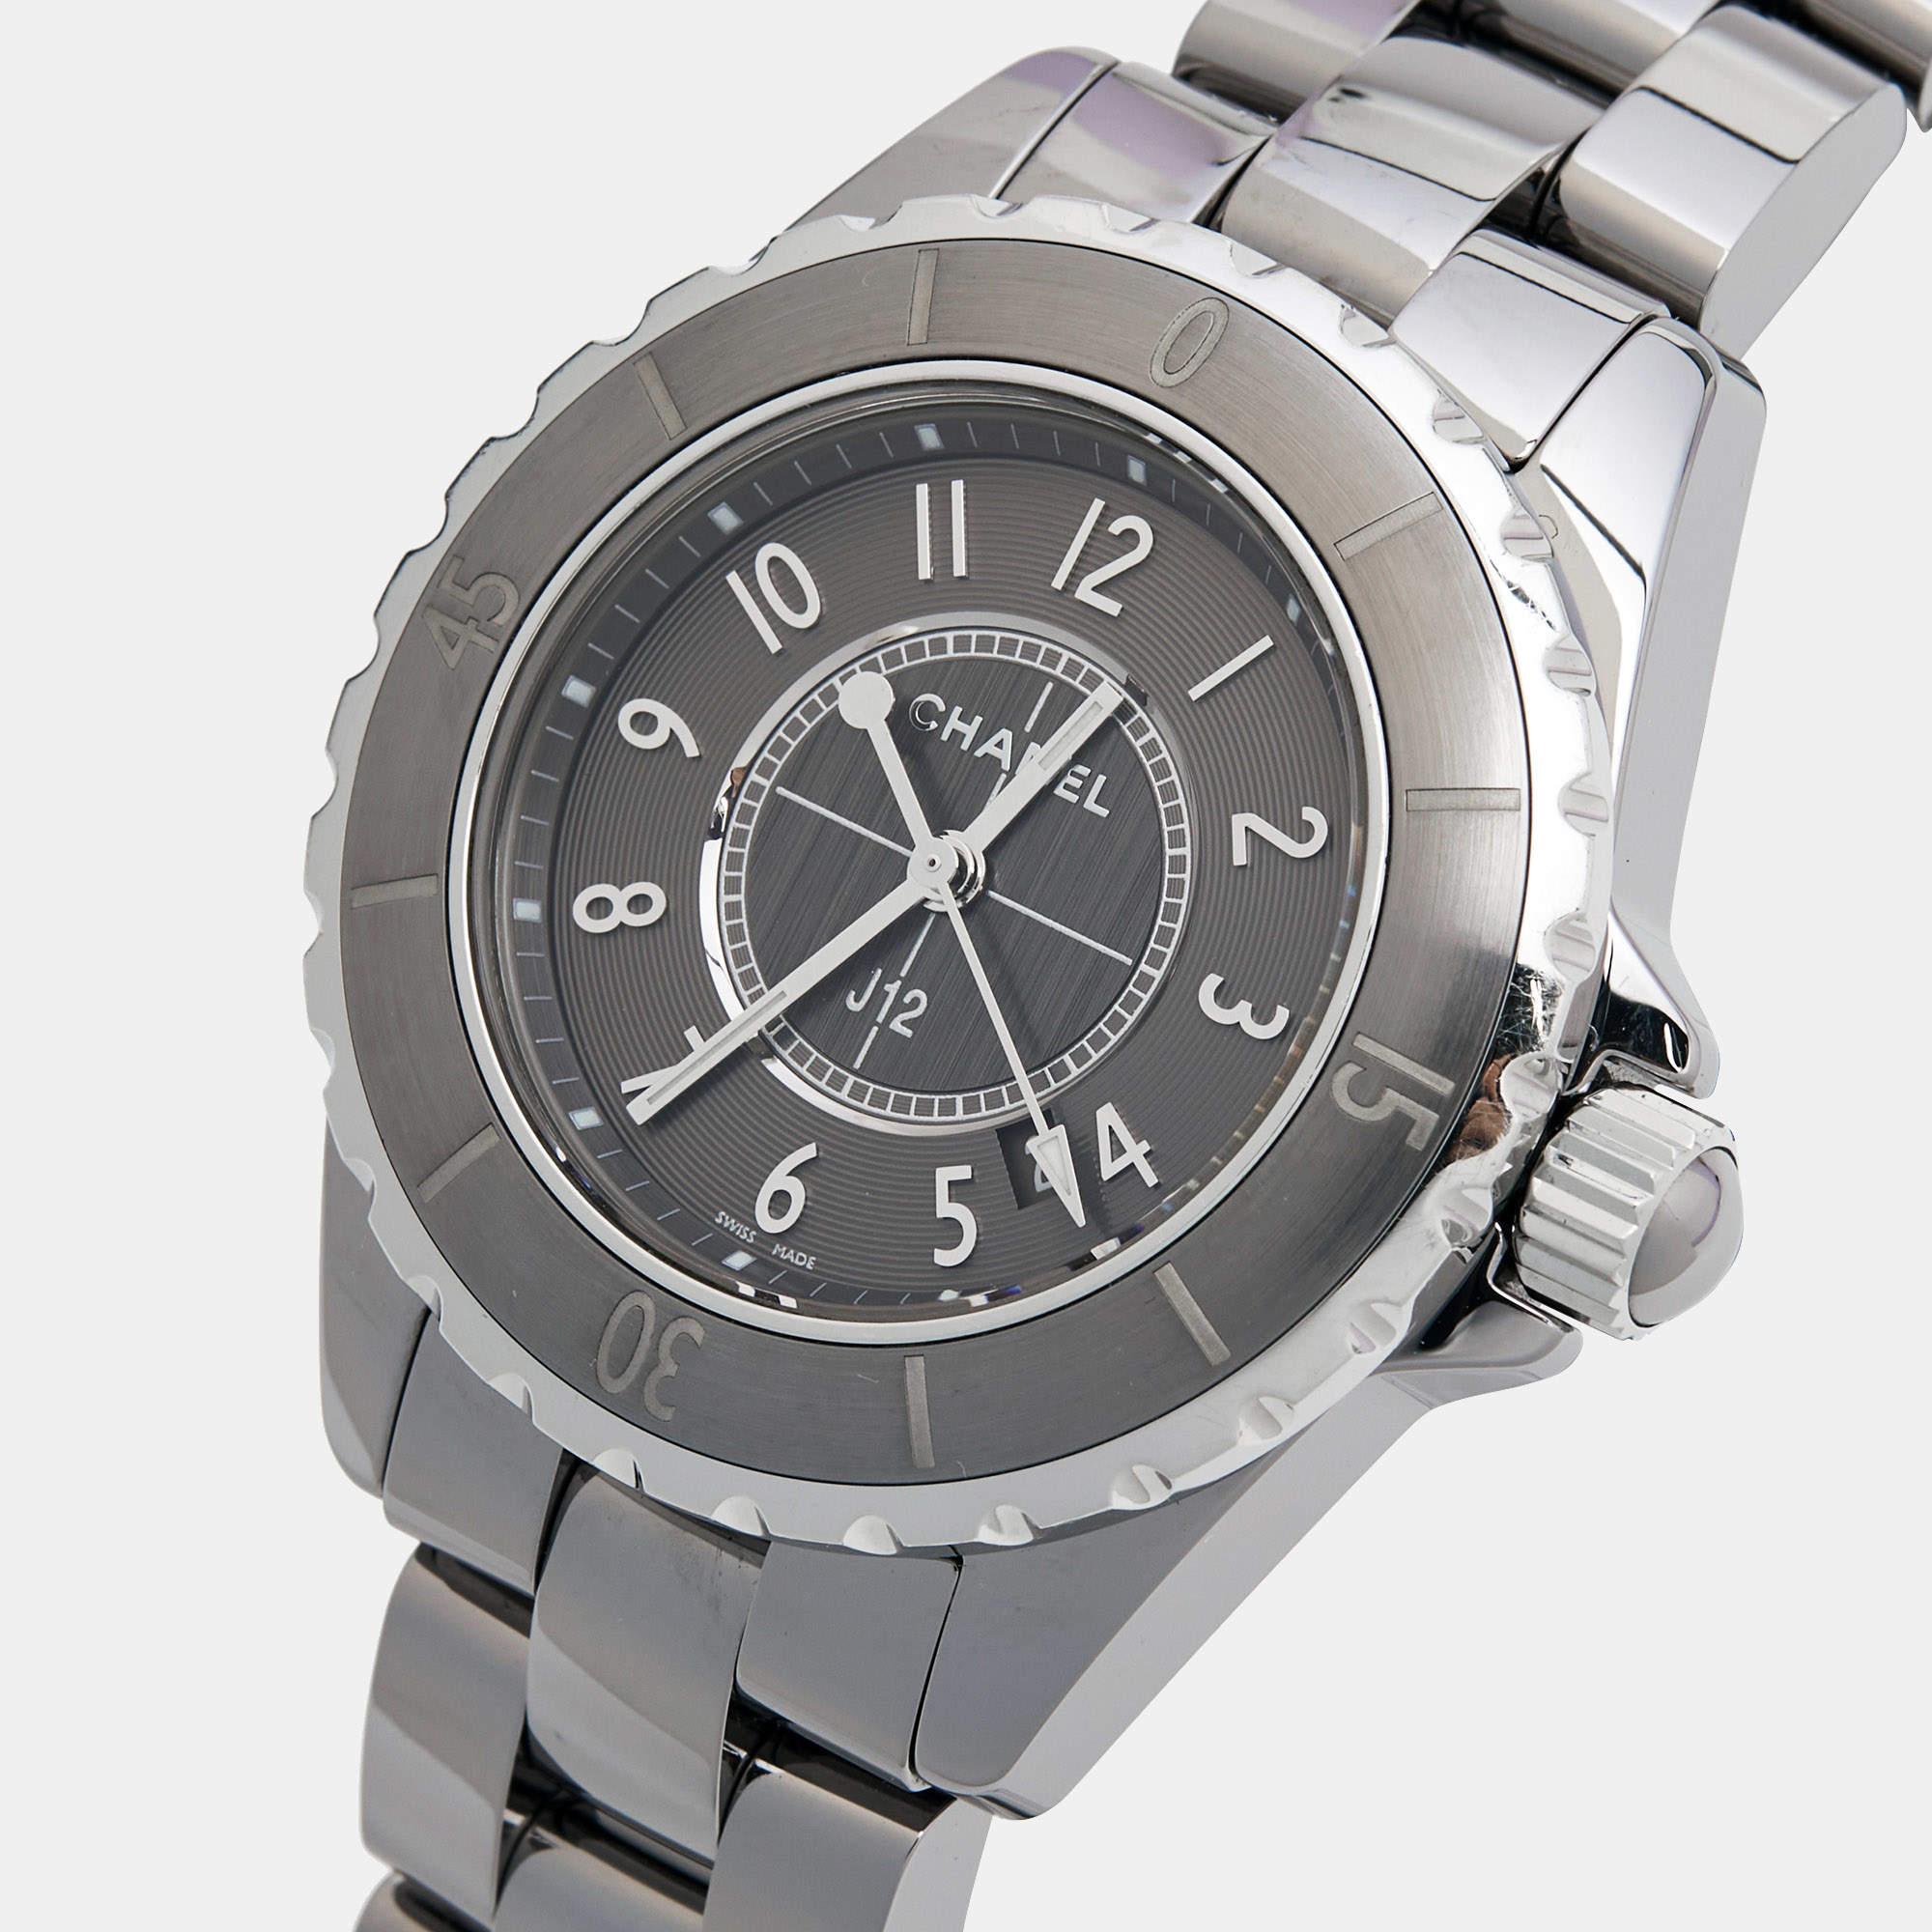 Eine zeitlose Silhouette aus hochwertigen Materialien, Präzision und Luxus machen diese Chanel-Armbanduhr zur perfekten Wahl für einen raffinierten Abschluss eines jeden Looks. Es ist eine großartige Kreation, die den Alltag